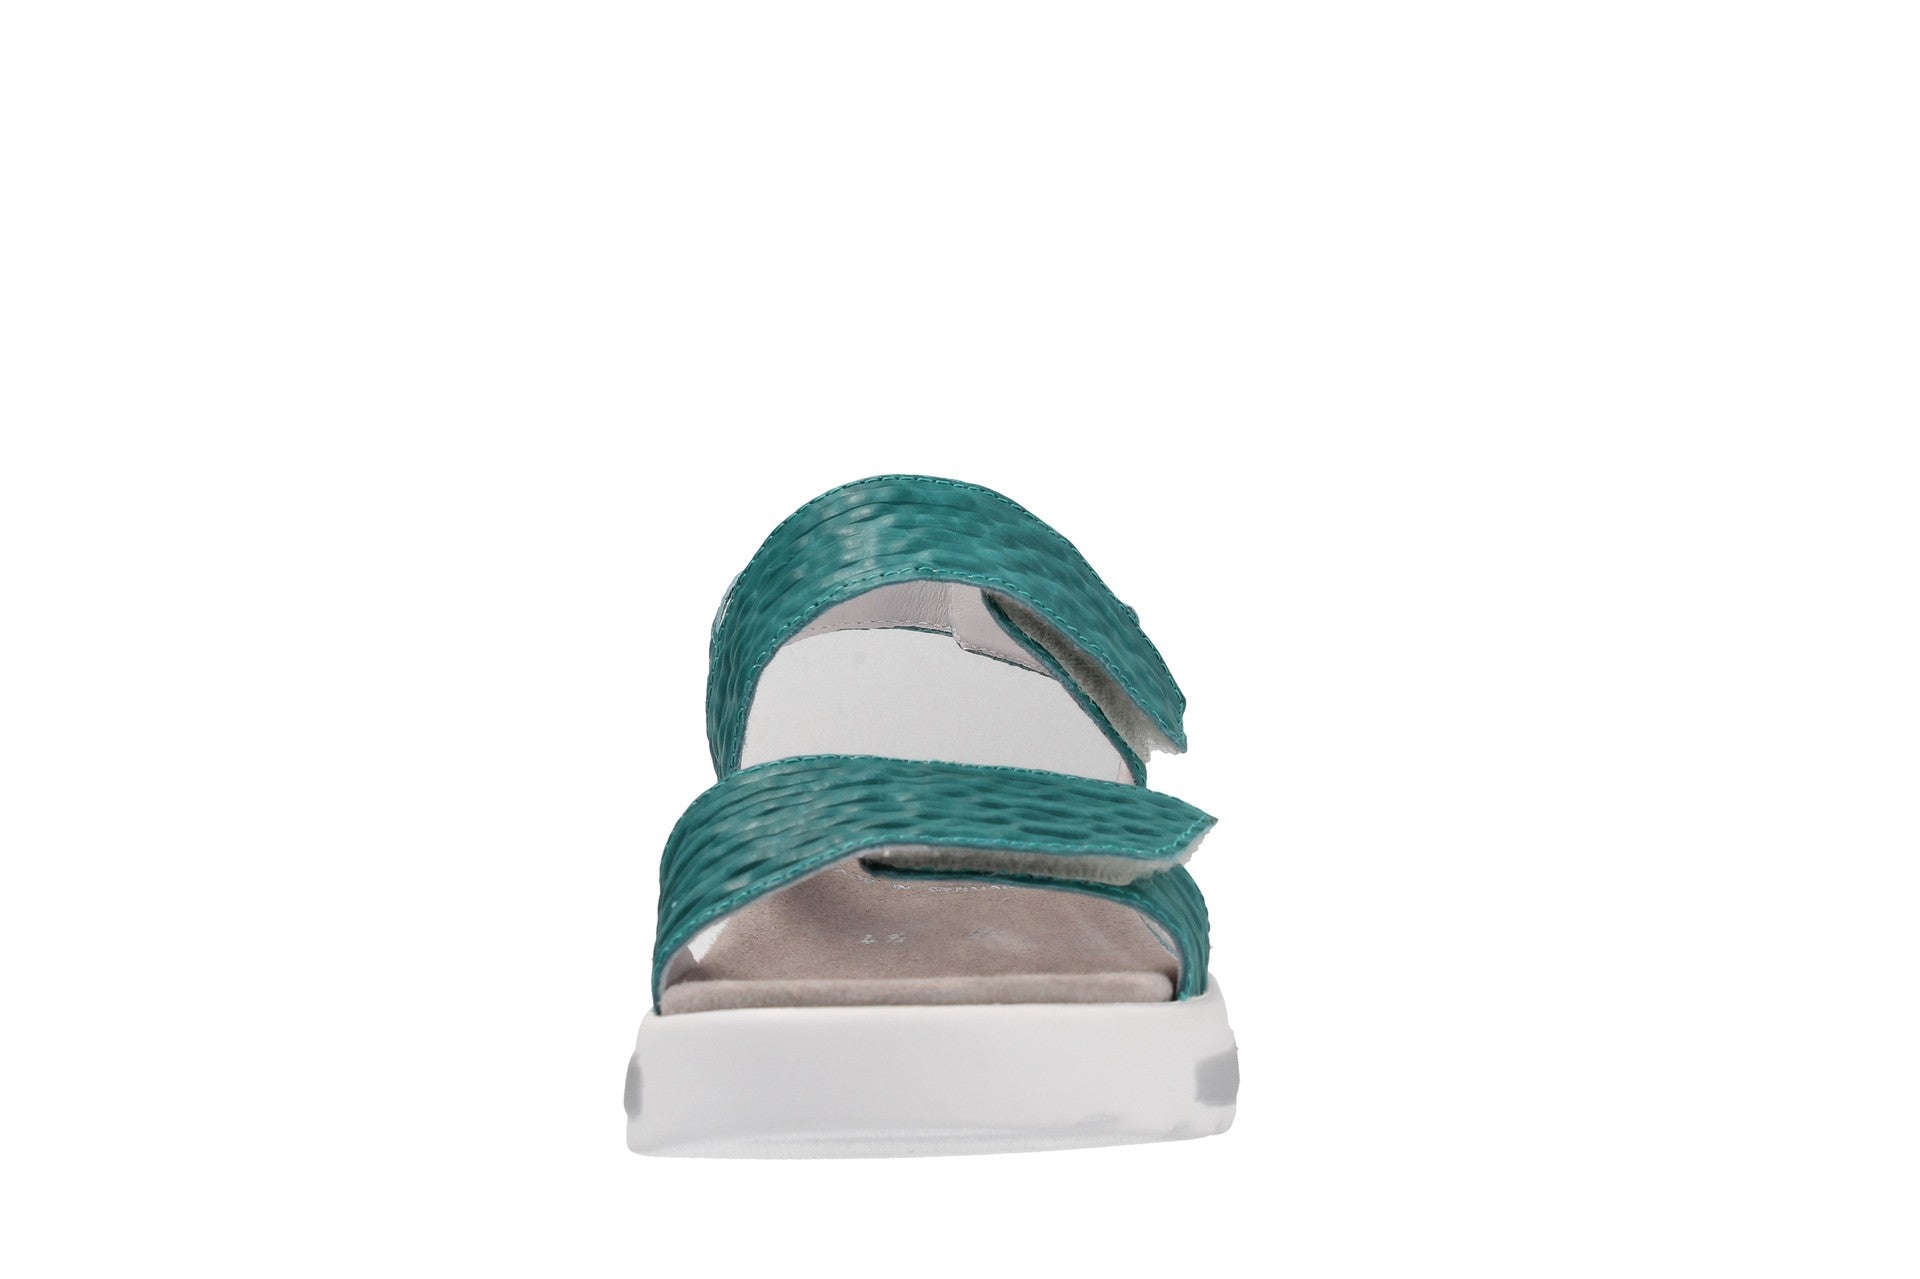 Hanna – aqua – sandales